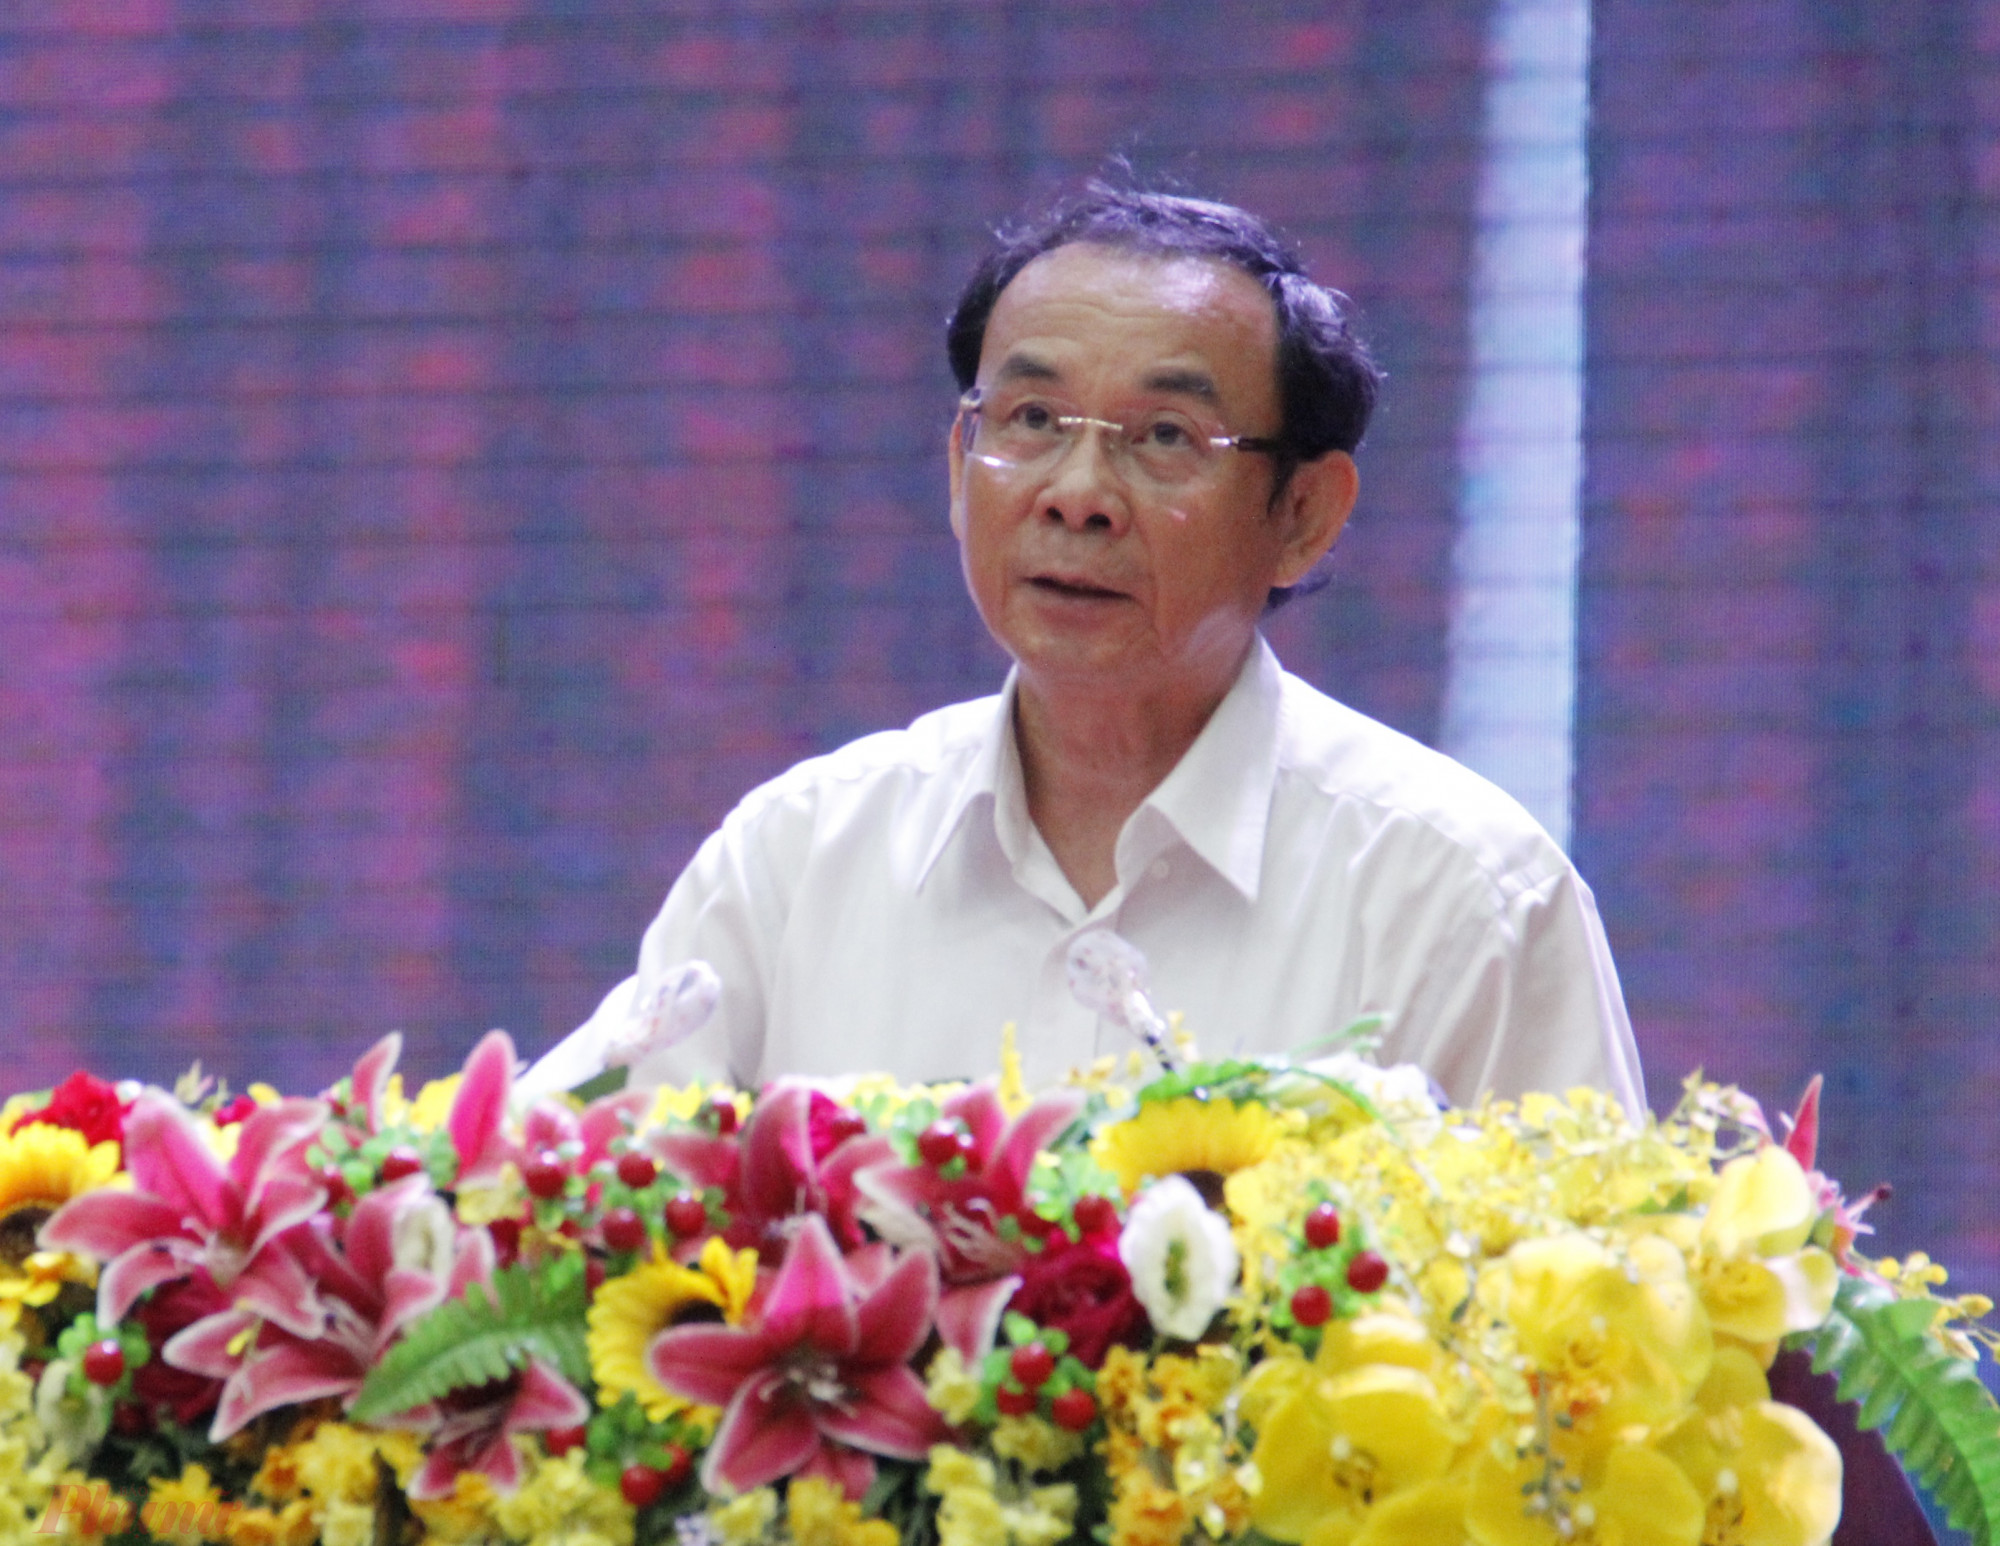 Bí thư Thành ủy TPHCM Nguyễn Văn Nên phát biểu tại điểm cầu TPHCM - ảnh: Sơn Vinh.